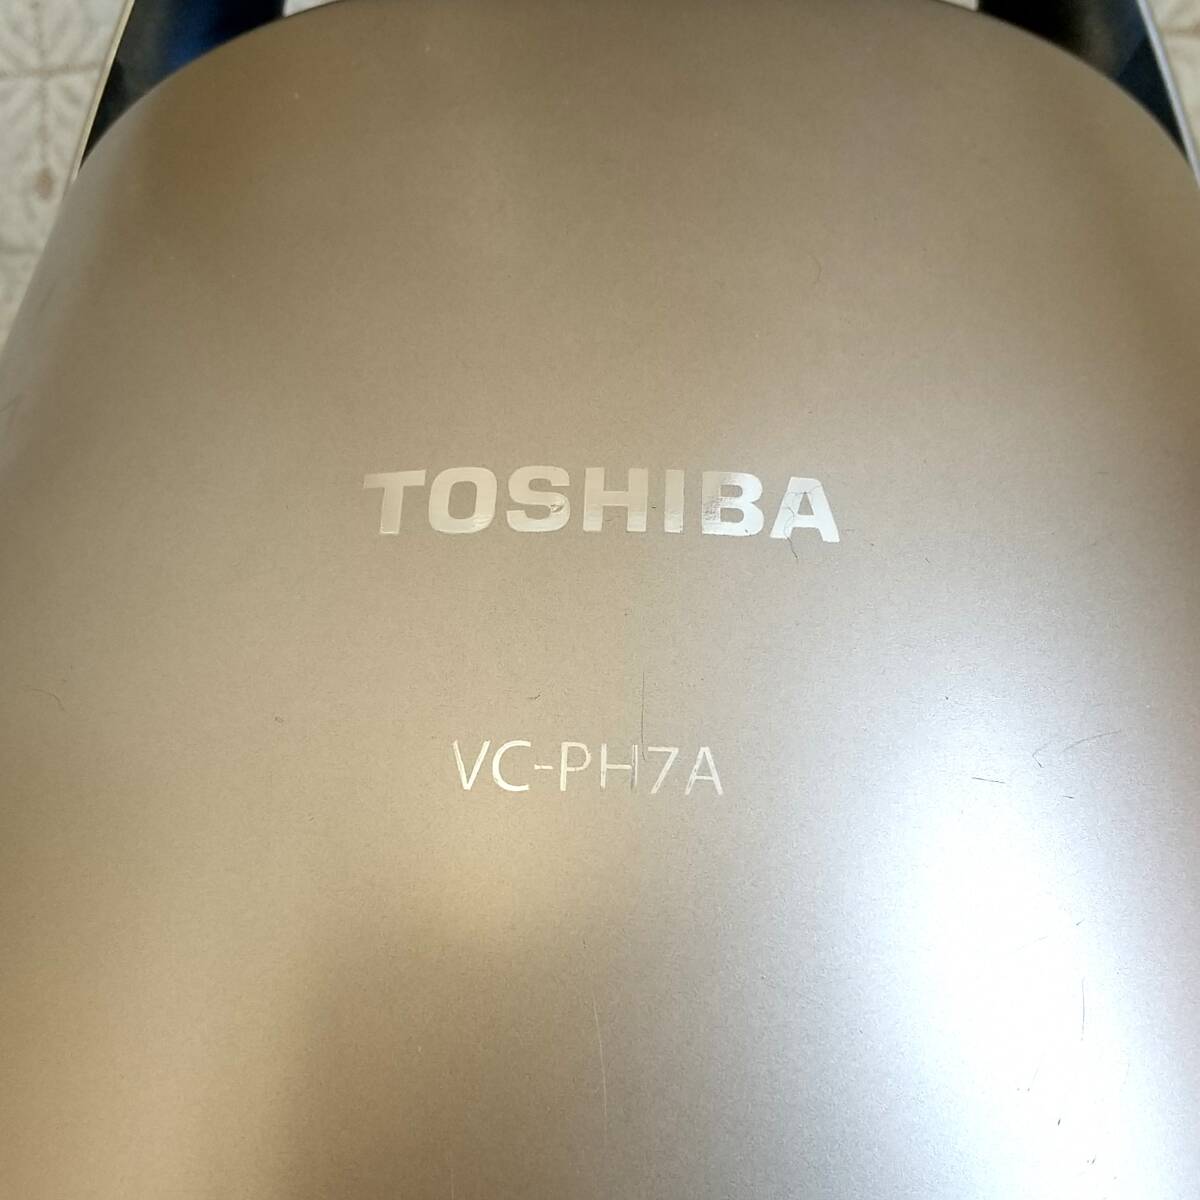 [593] утиль 2020 год производства Toshiba бумага упаковка тип пылесос VC-PH7A